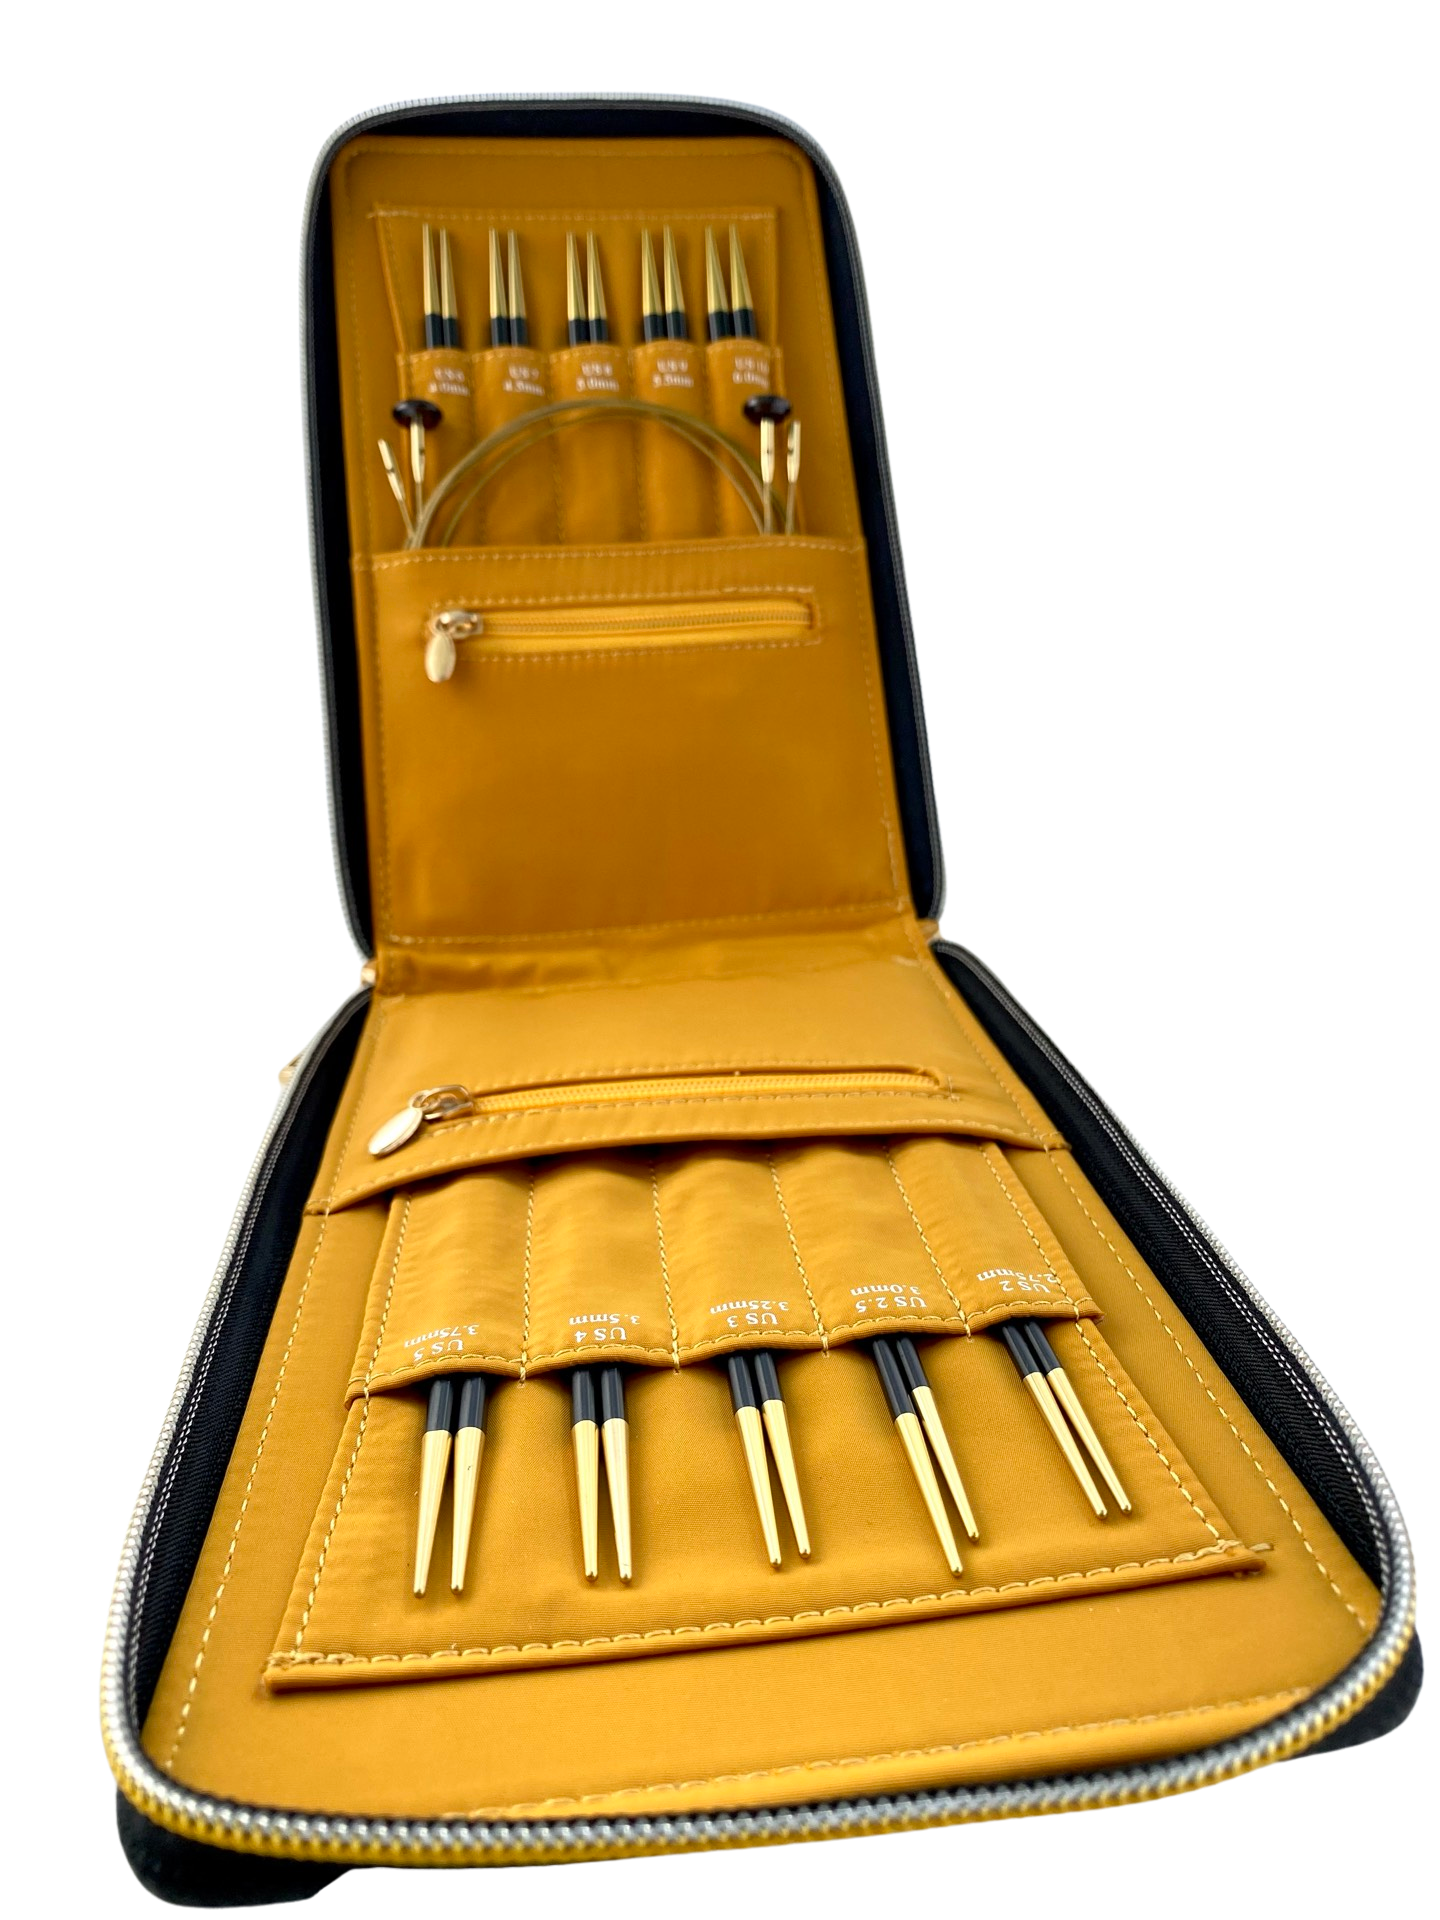 Genuine leather knitting needle organizer case